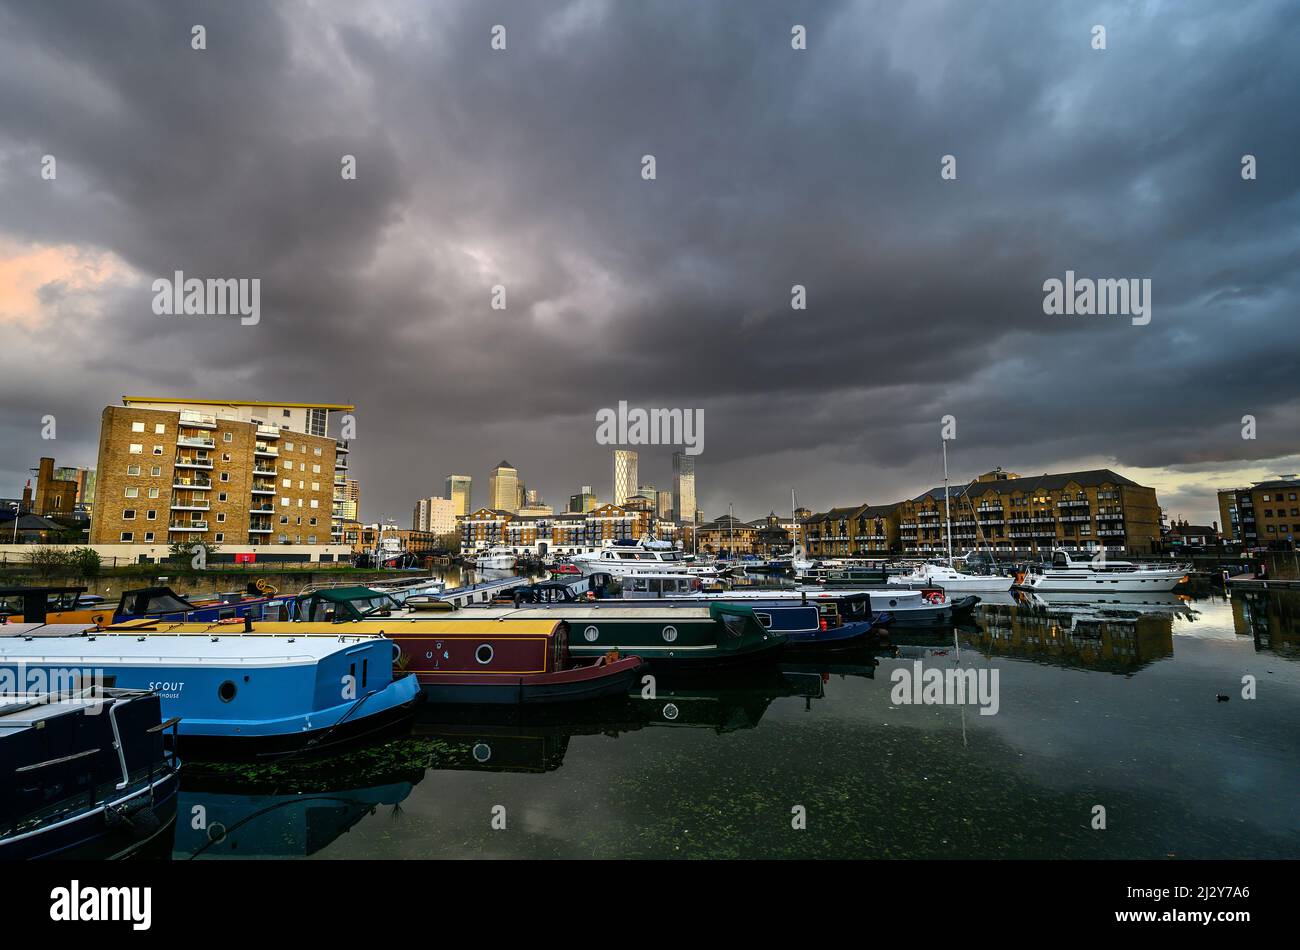 Limehouse, London, Großbritannien: Blick auf das Limehouse Basin, eine Marina in den docklands im Osten Londons. Hohe Gebäude von Canary Wharf sind dahinter. Stockfoto